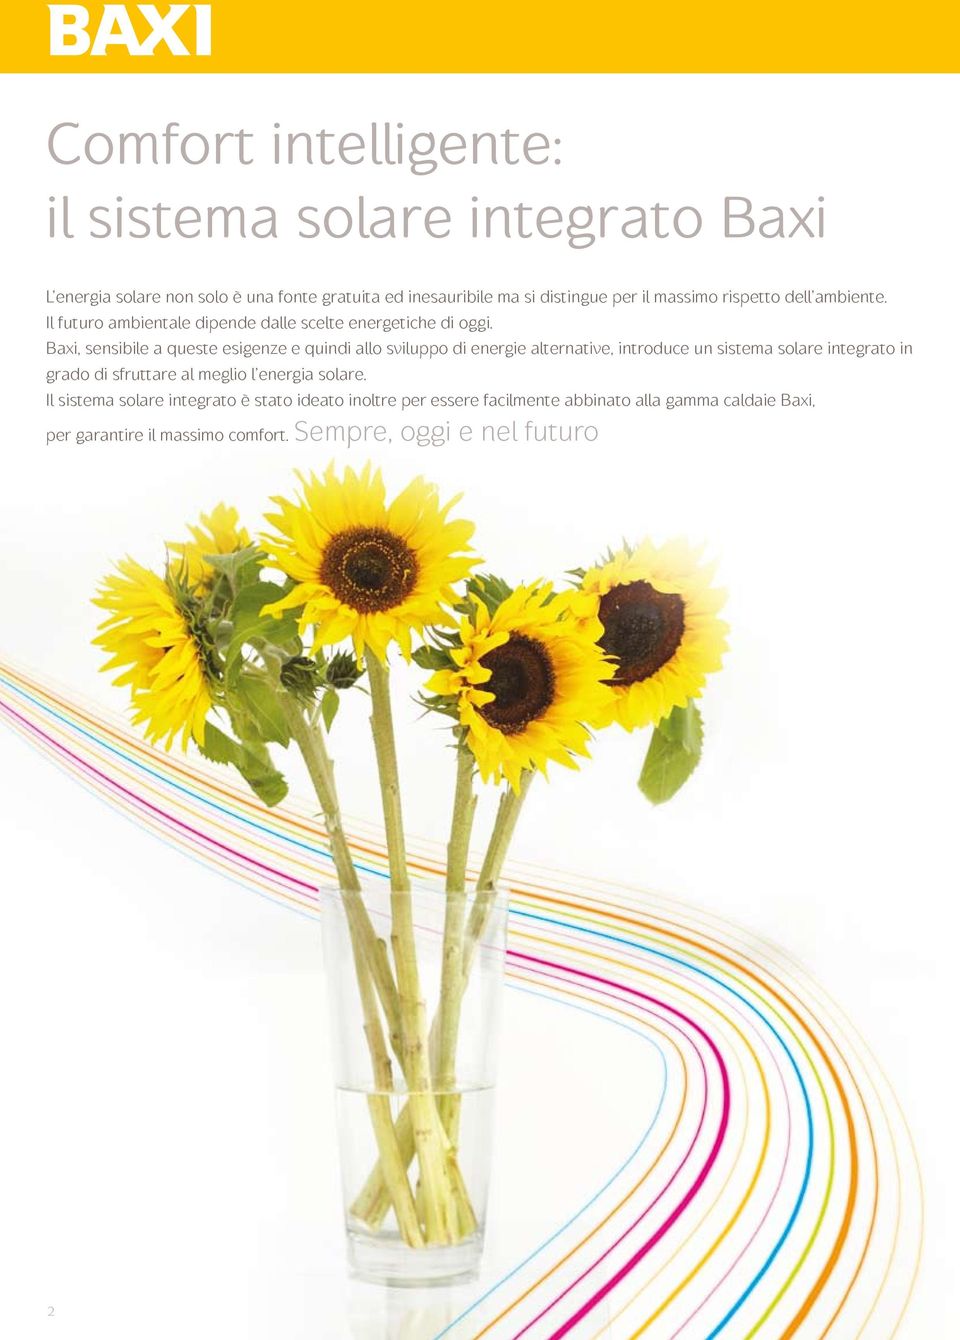 Baxi, sensibile a queste esigenze e quindi allo sviluppo di energie alternative, introduce un sistema solare integrato in grado di sfruttare al